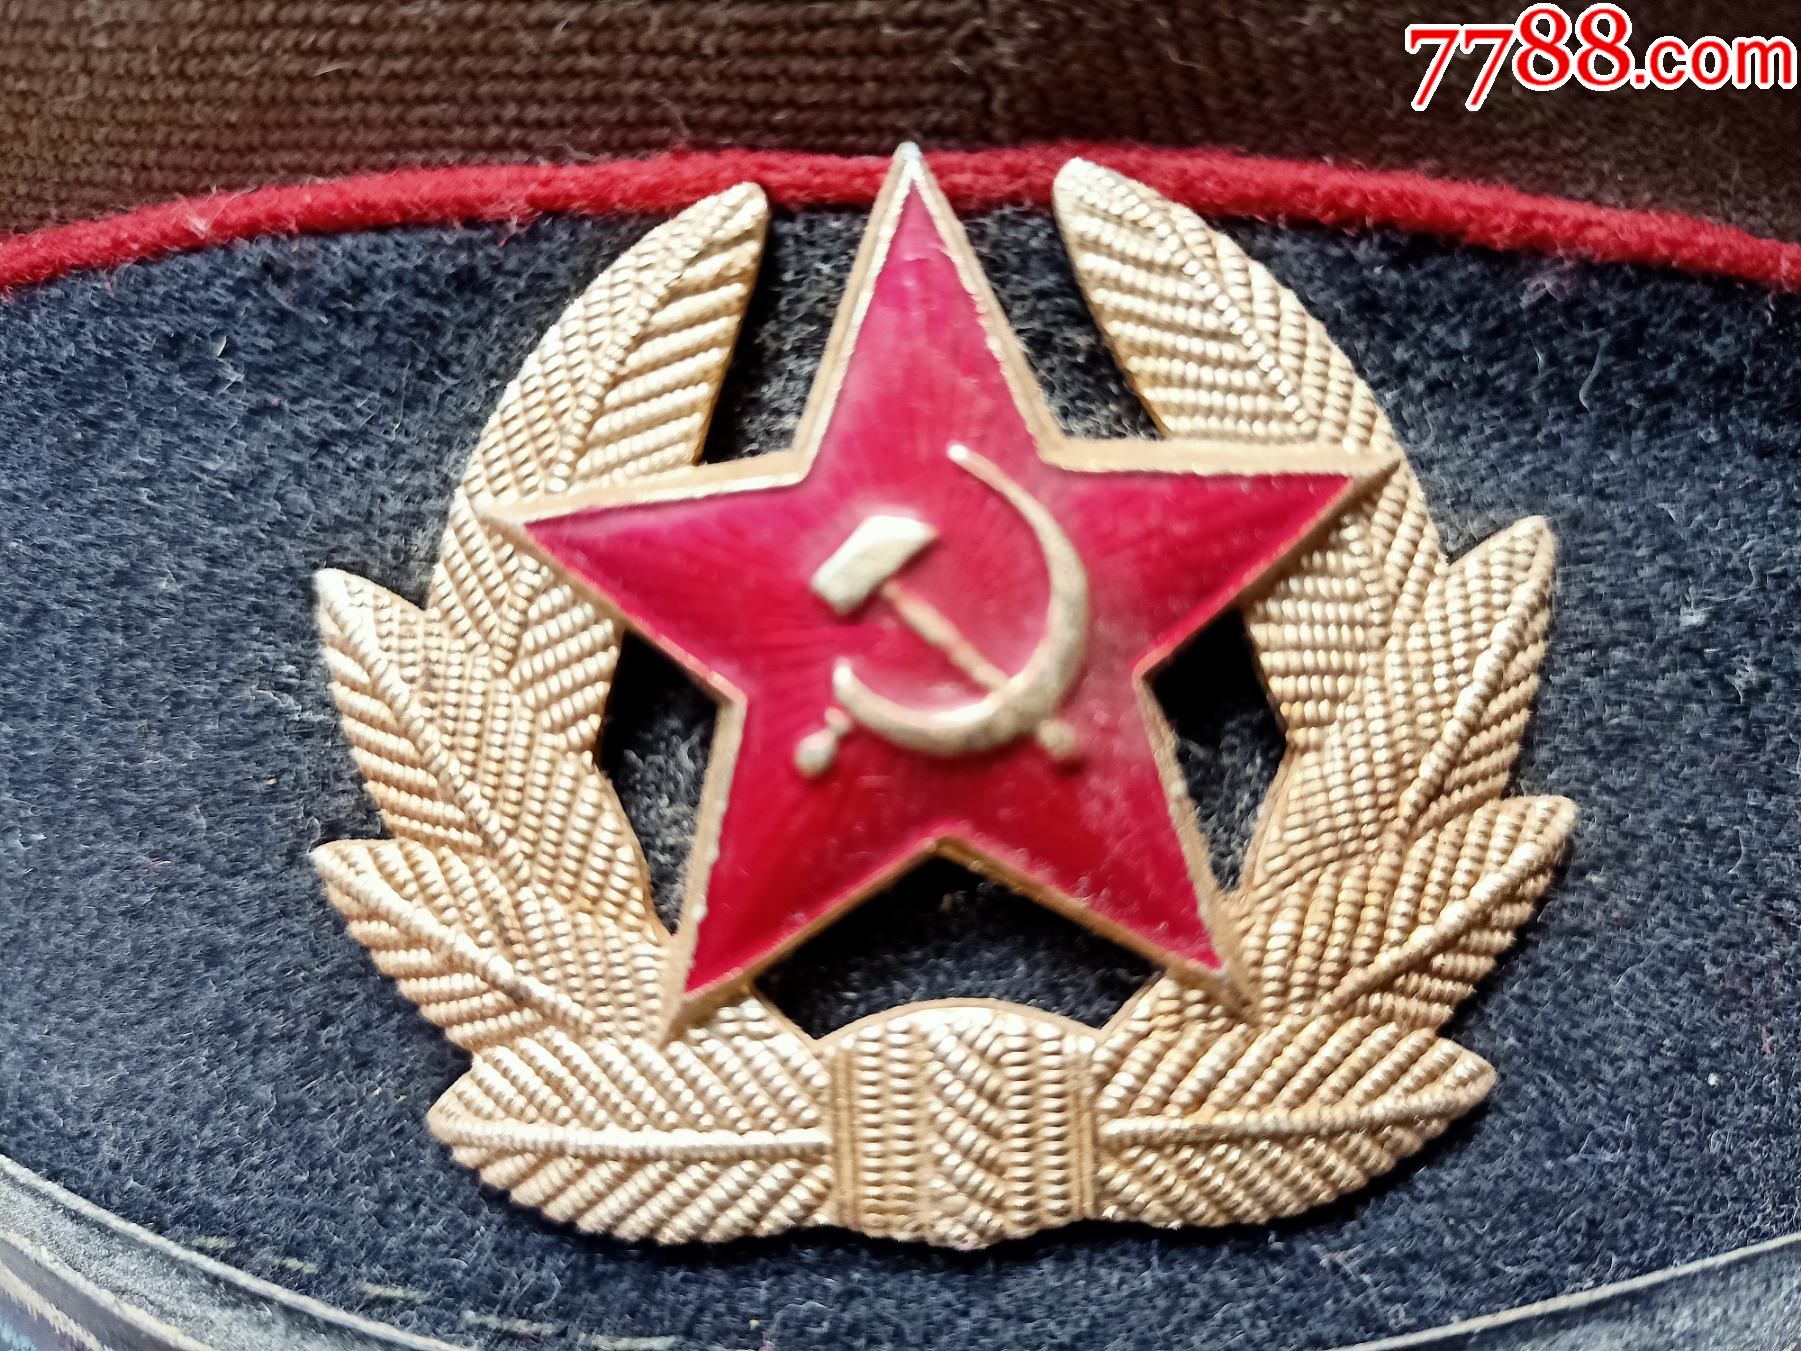 二战时期苏联军帽a476,品相如图,瑕疵图中有示,快递20元